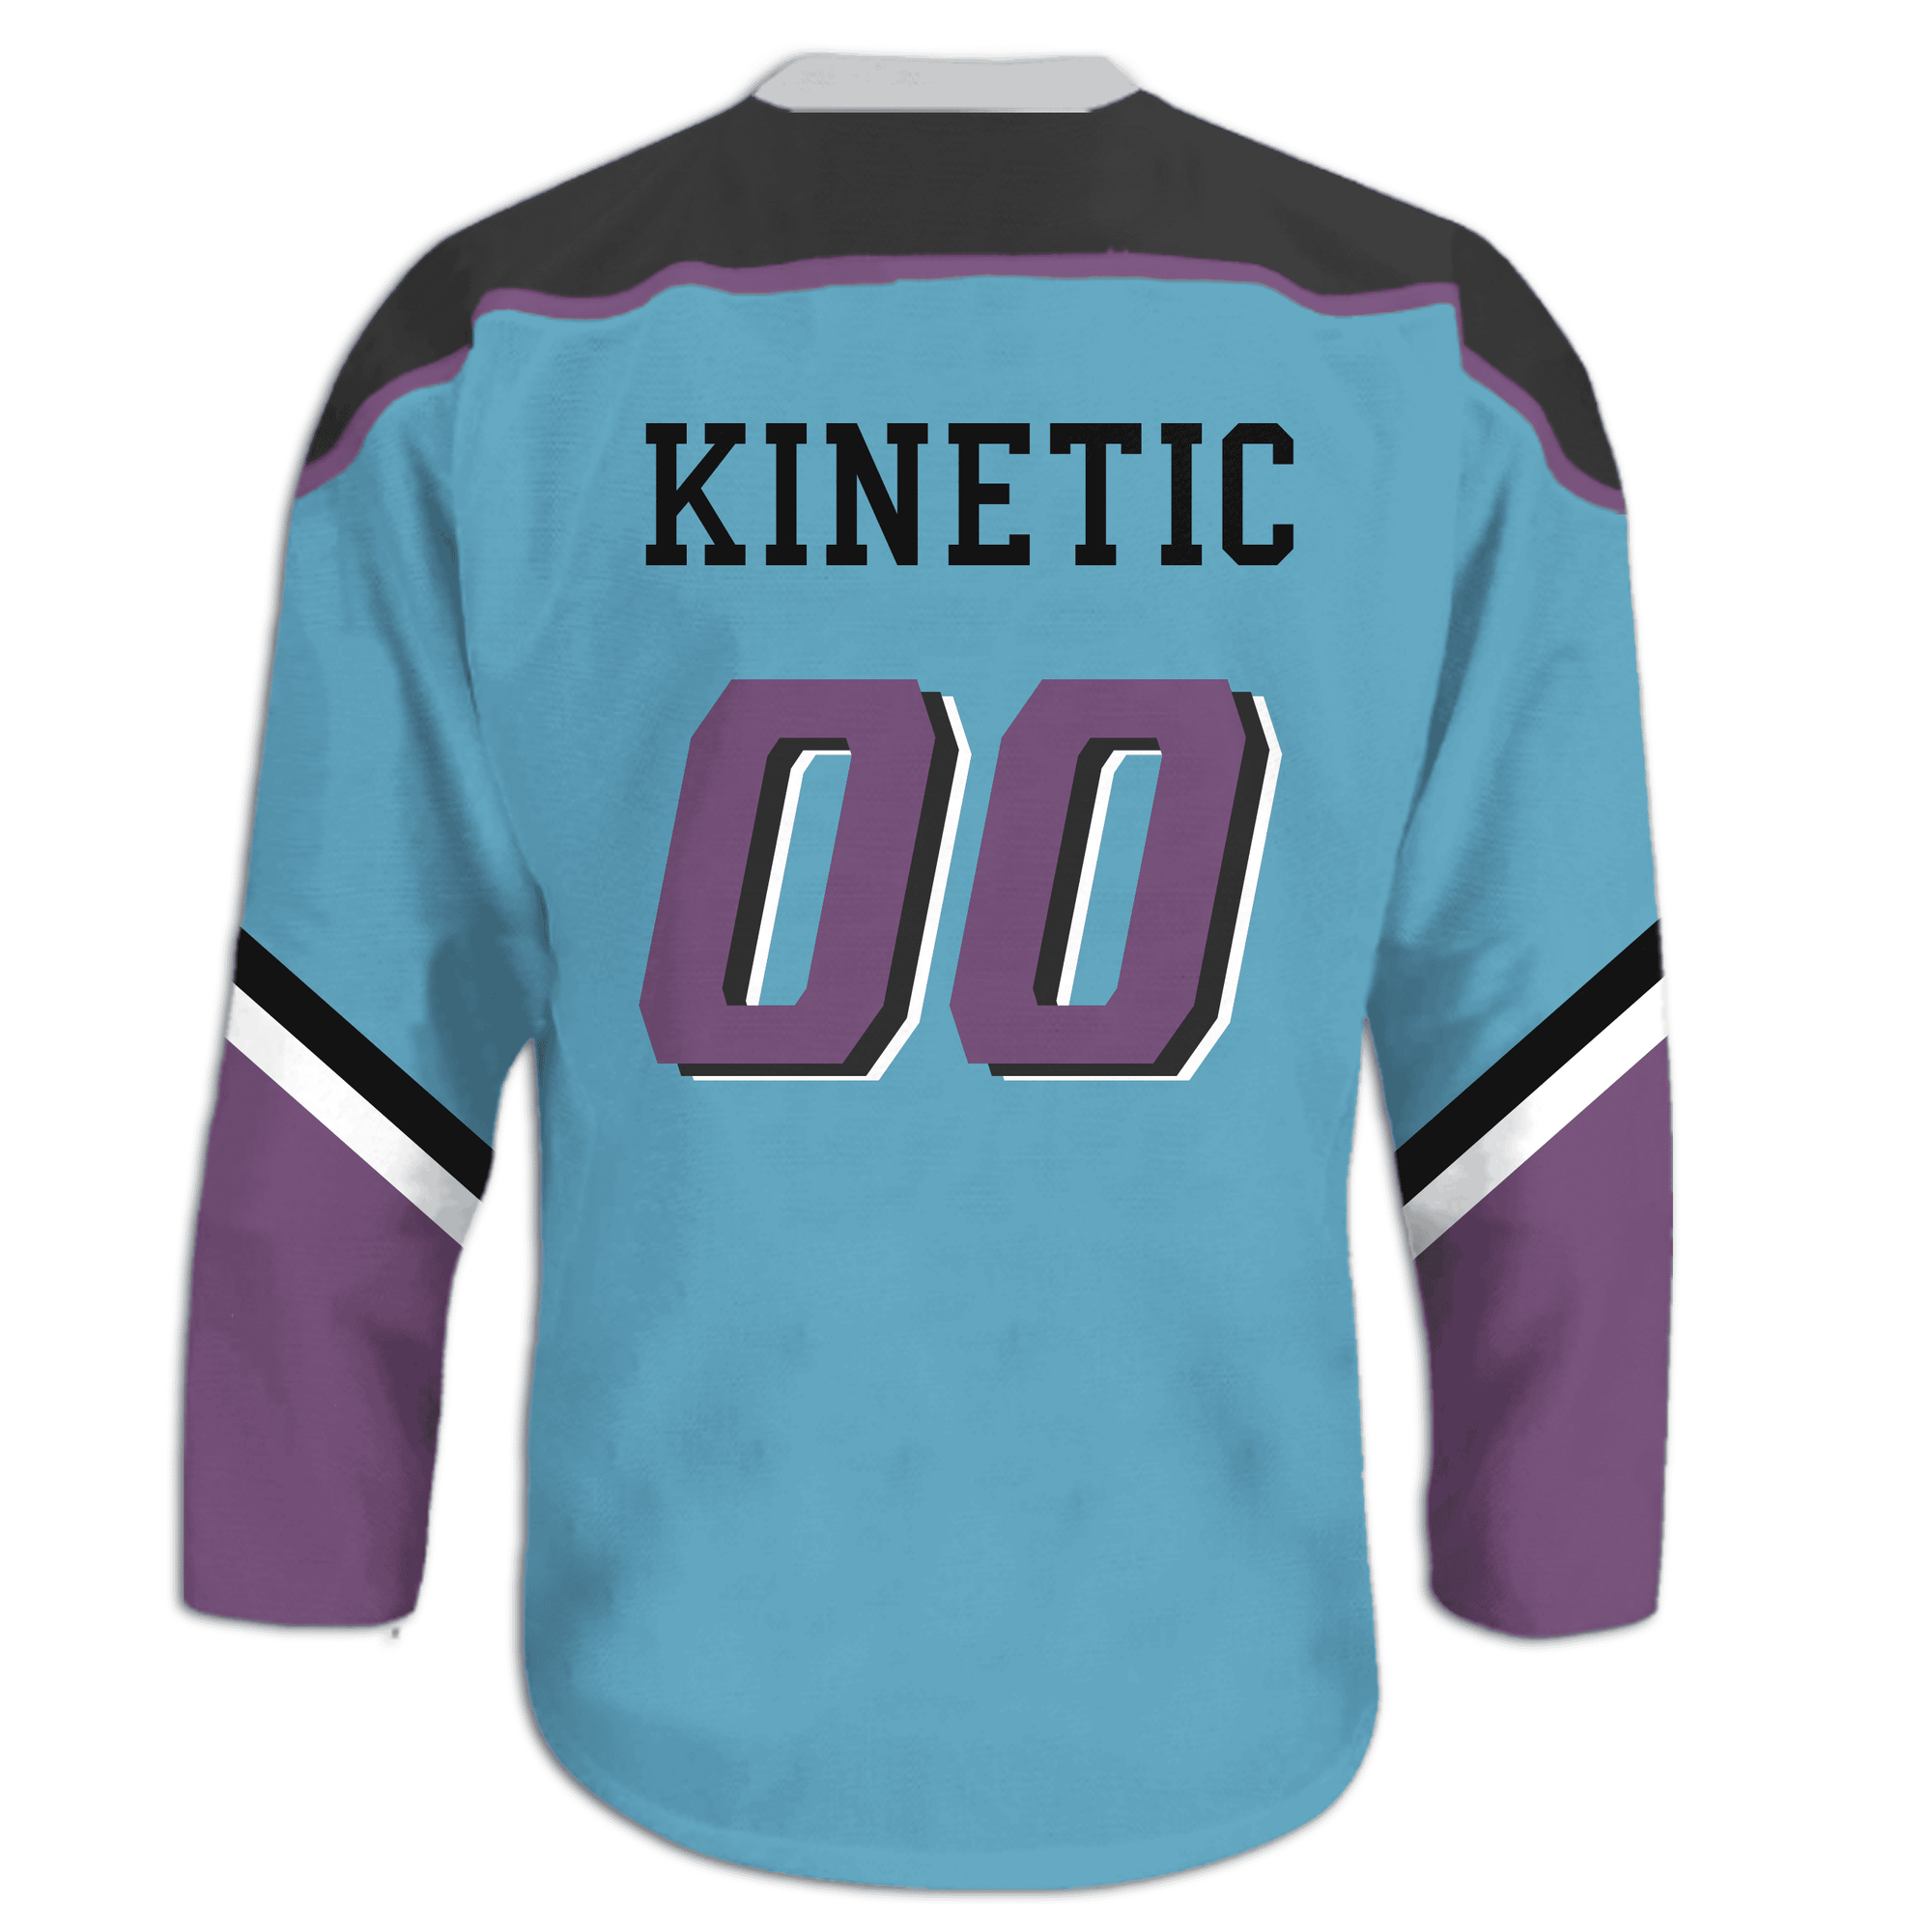 Phi Sigma Kappa - Kratos Hockey Jersey